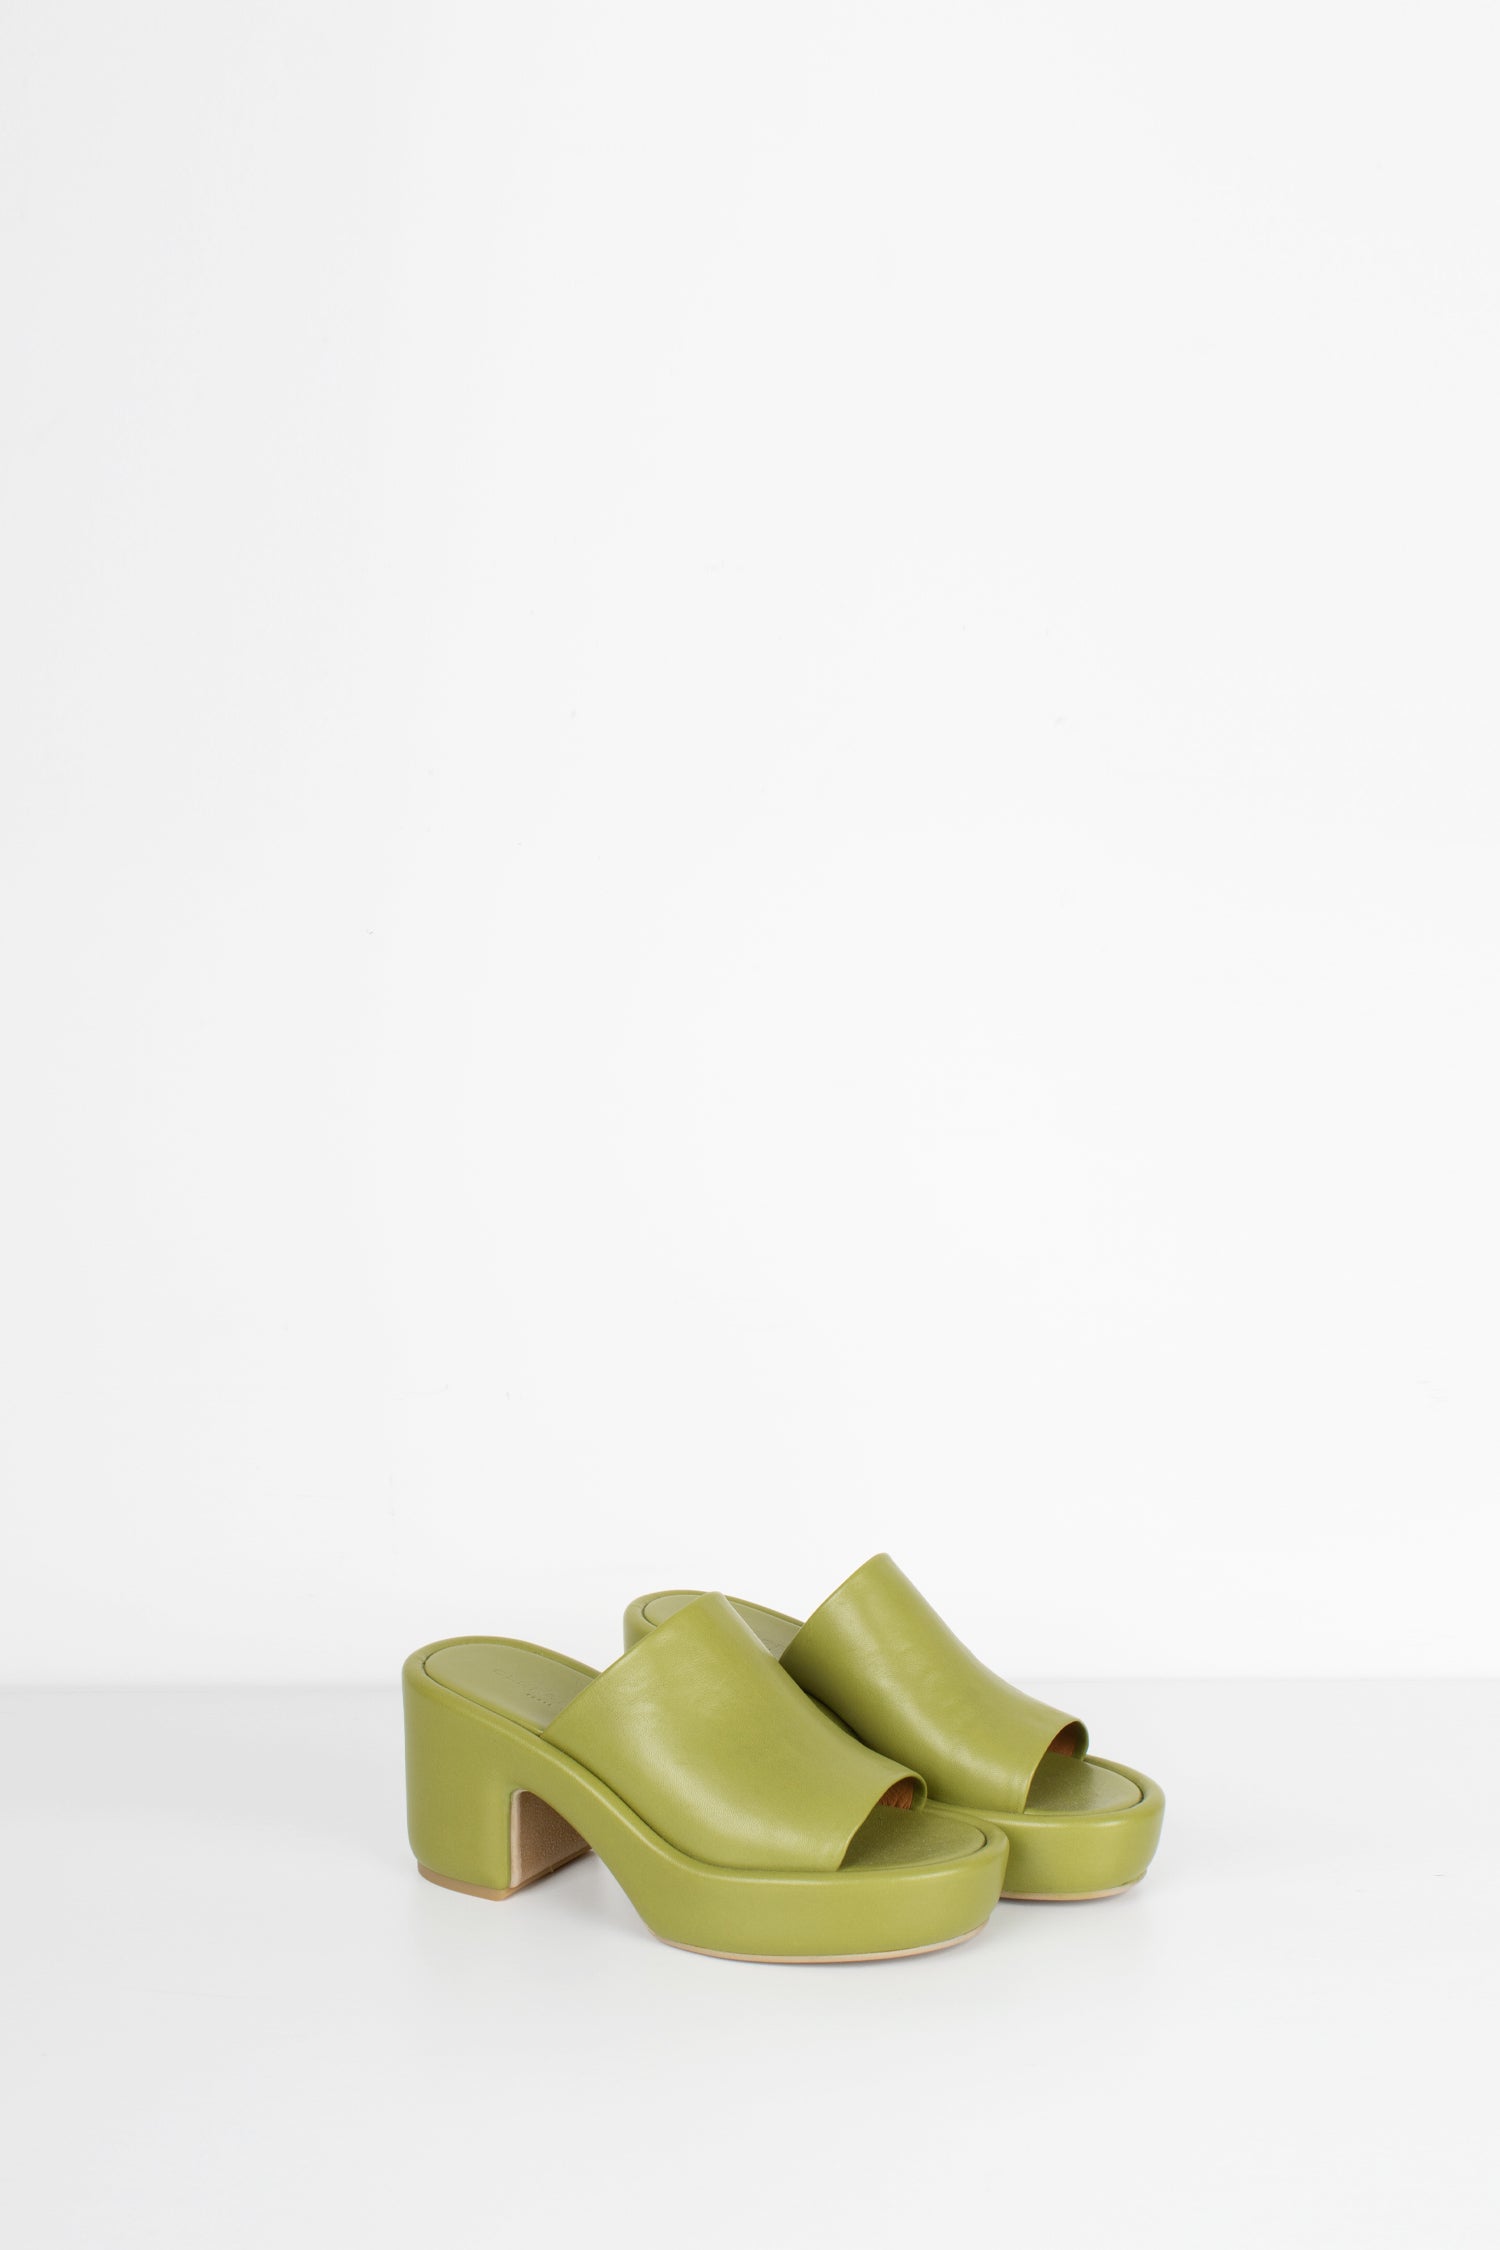 leather mule, green, heel